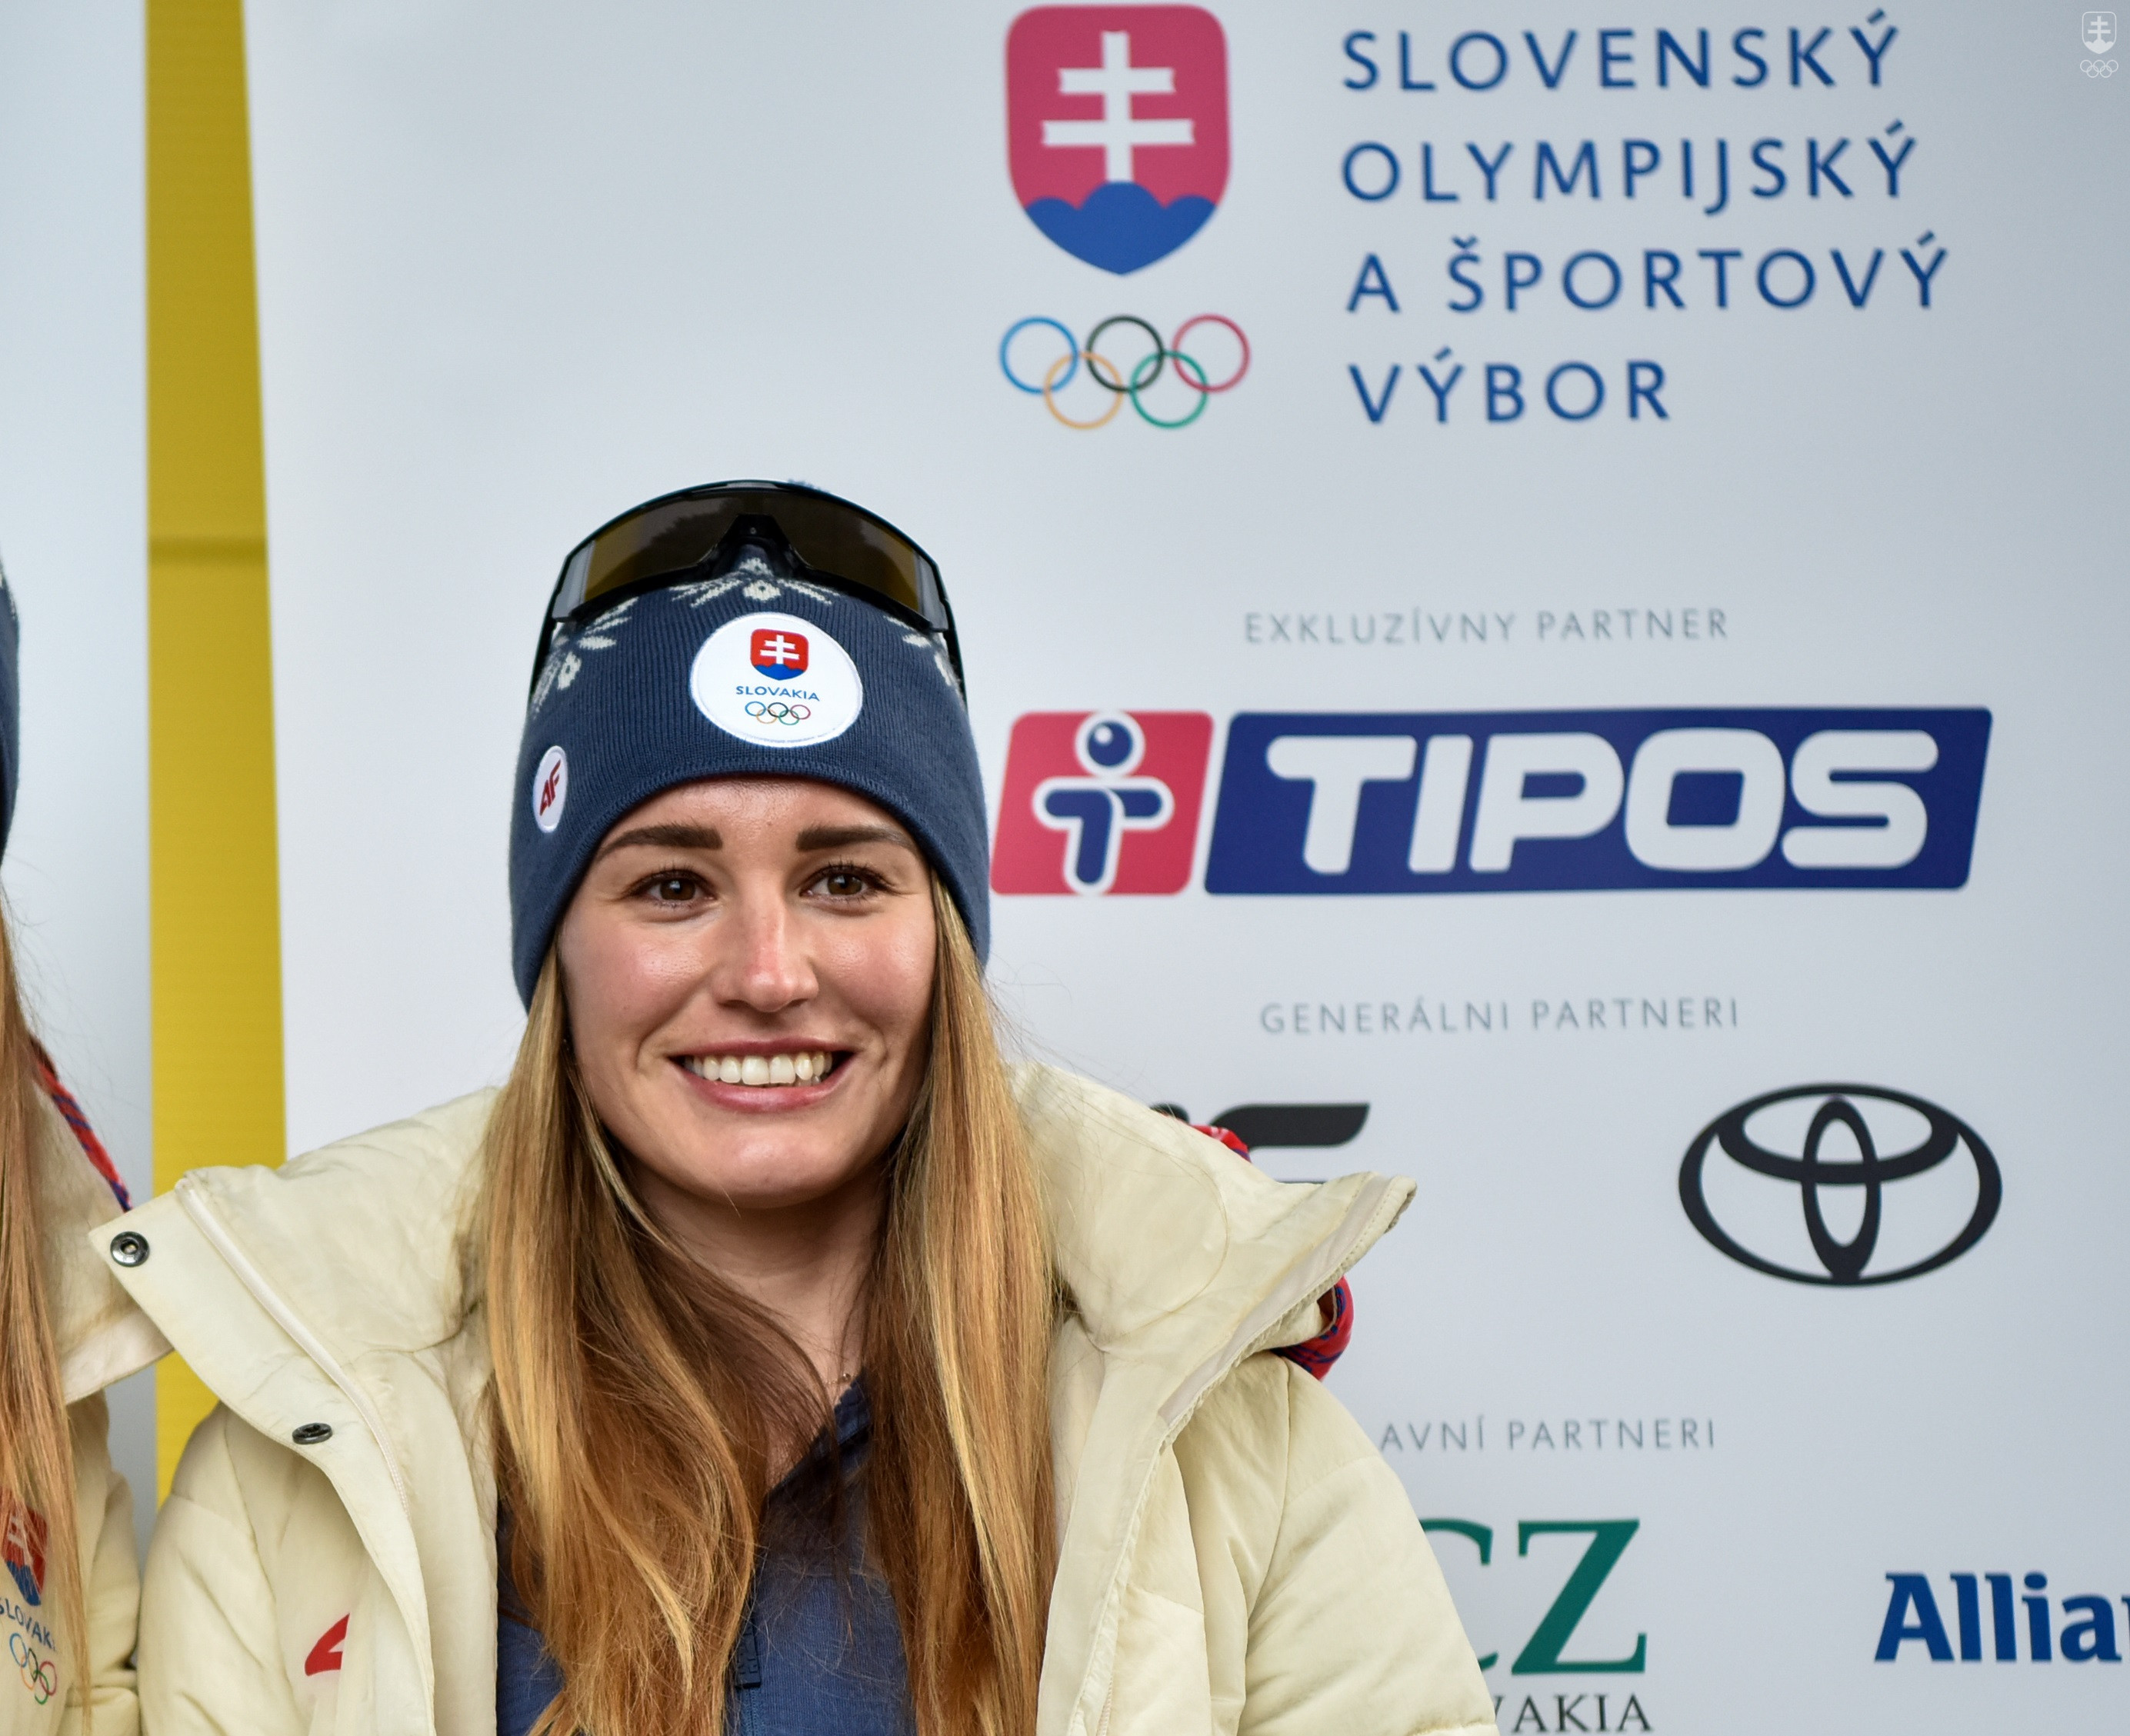 Aj úspešná biatlonistka Paulína Bátovská Fialková, ktorá je členkou komisie športovcov SOŠV, podporuje projekt duálnej kariéry.